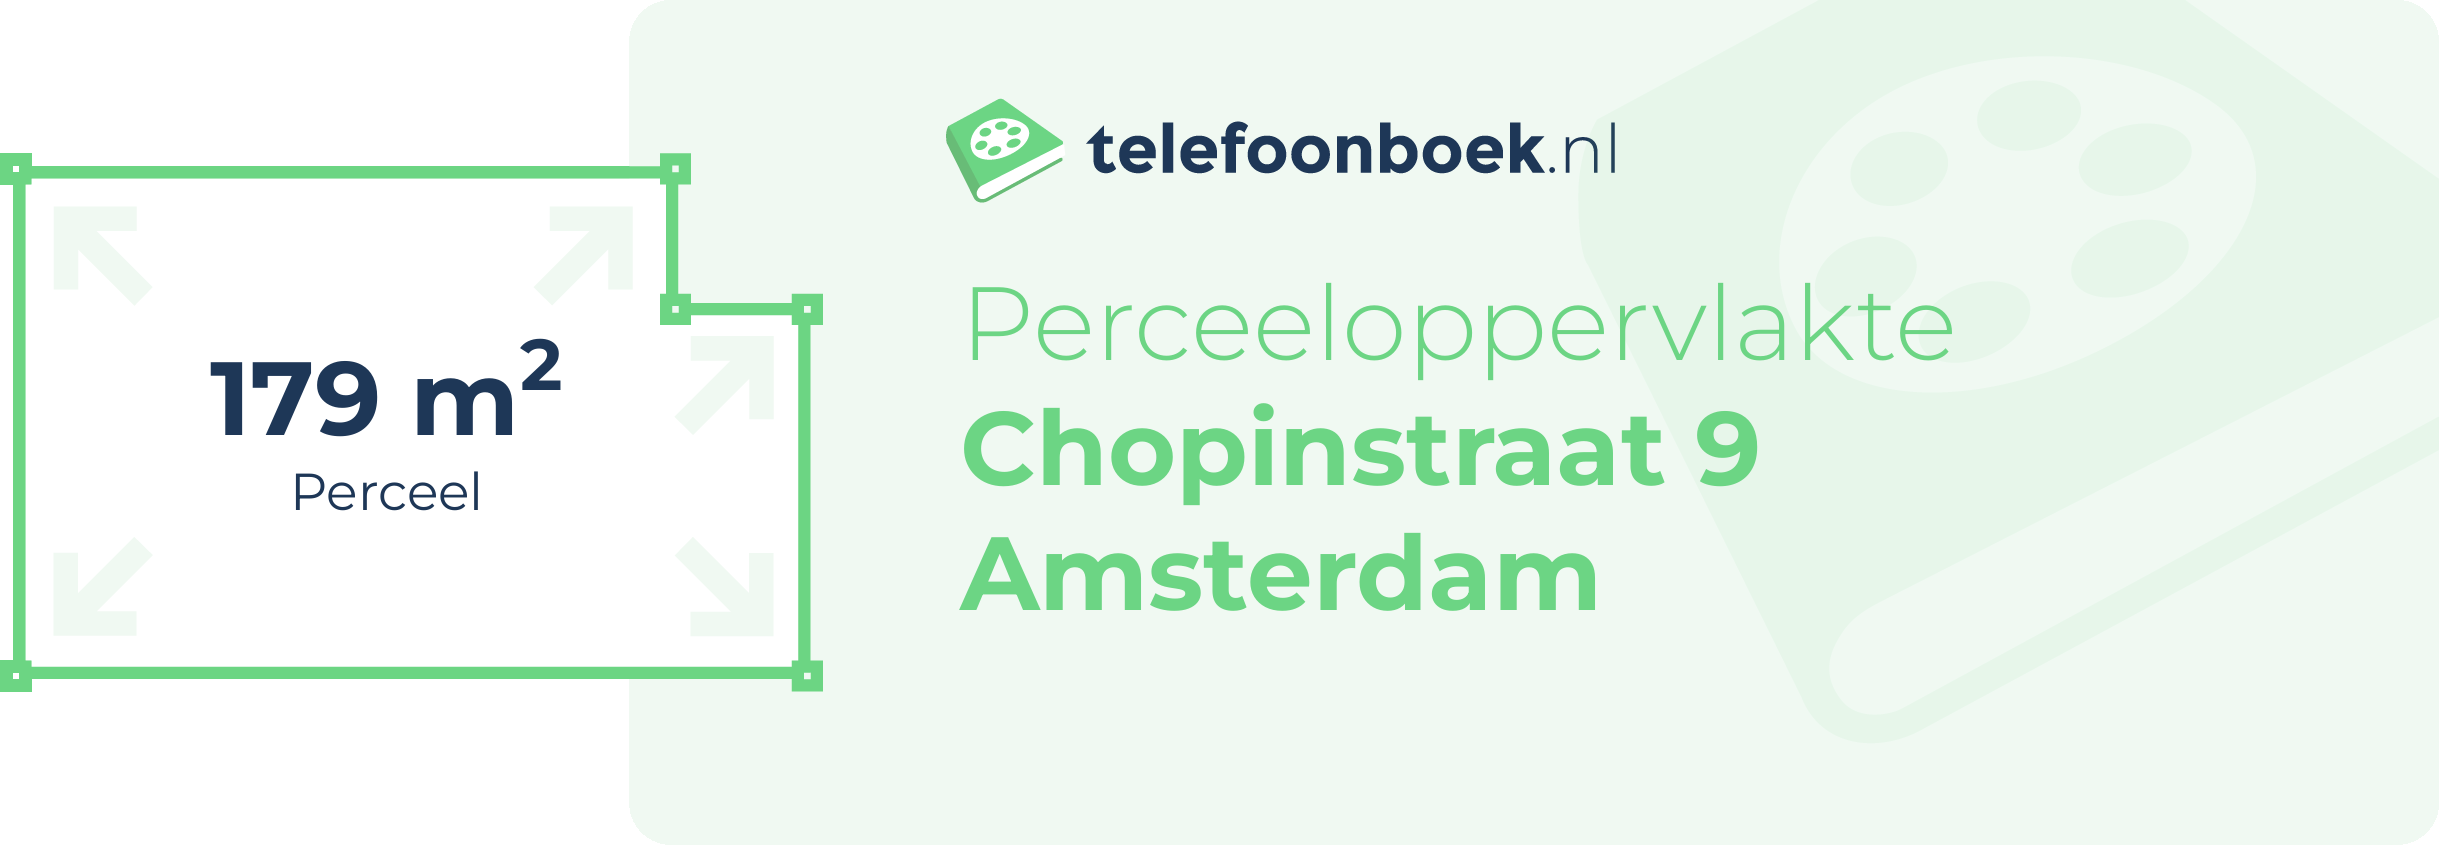 Perceeloppervlakte Chopinstraat 9 Amsterdam